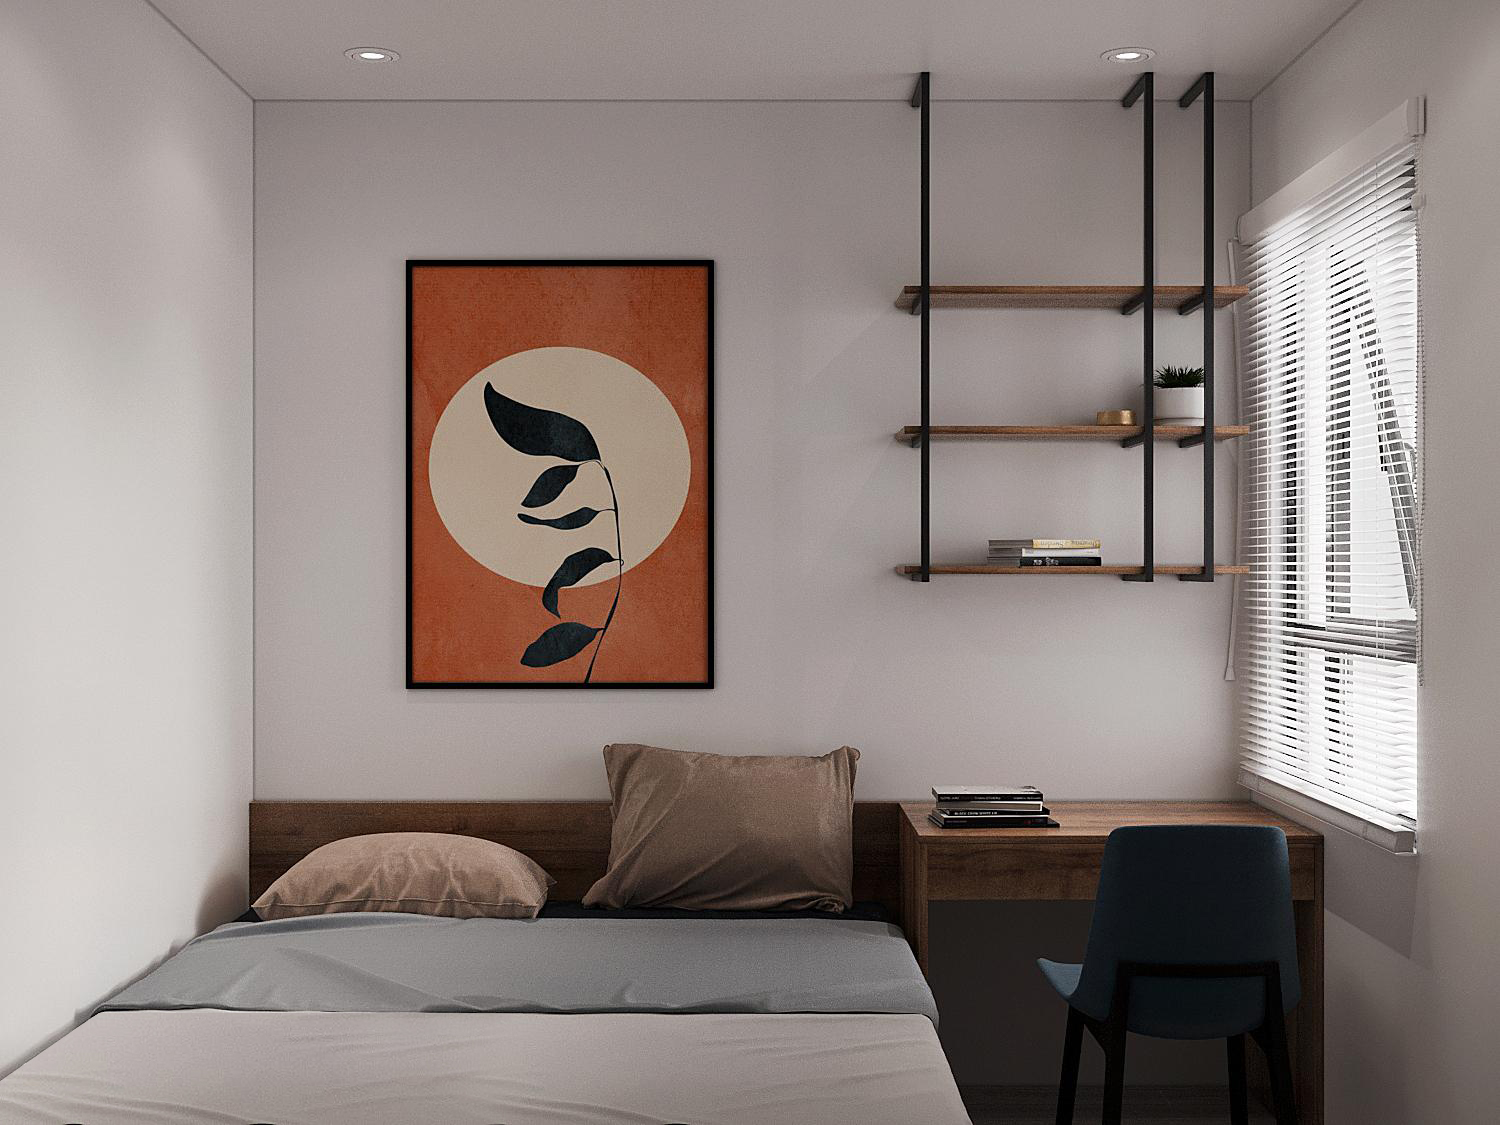 Một phòng ngủ khác trong căn hộ 63m2 với thiết kế nội thất tương tự. Tranh tường màu cam, họa tiết hình tròn trung tâm tạo điểm nhấn hút mắt.